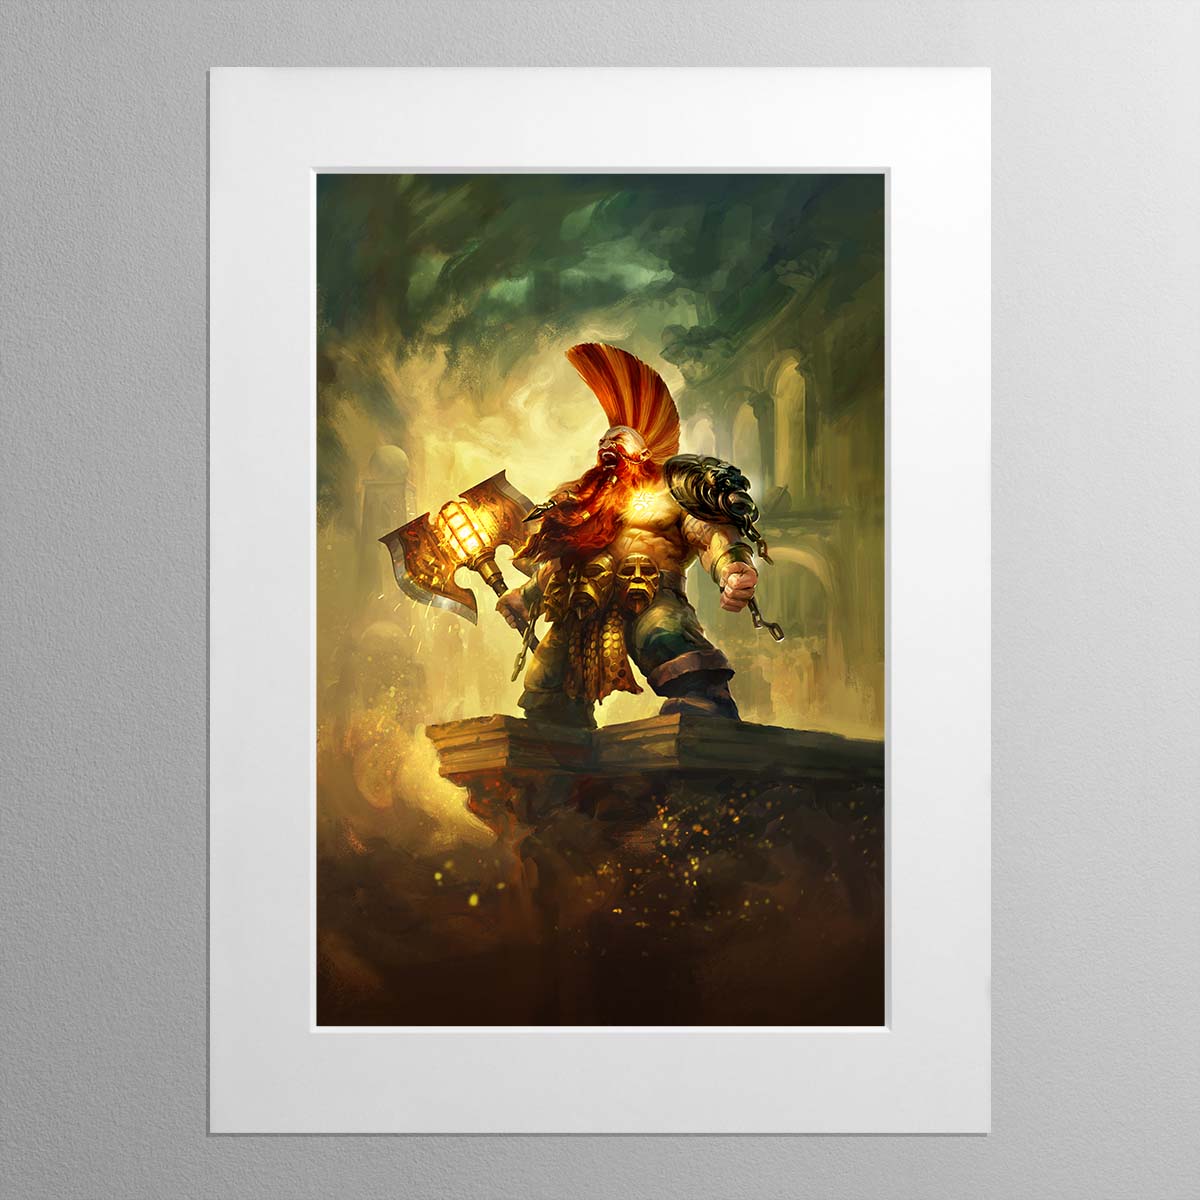 Gotrek Realmslayer Legend of the Doomseeker – Mounted Print